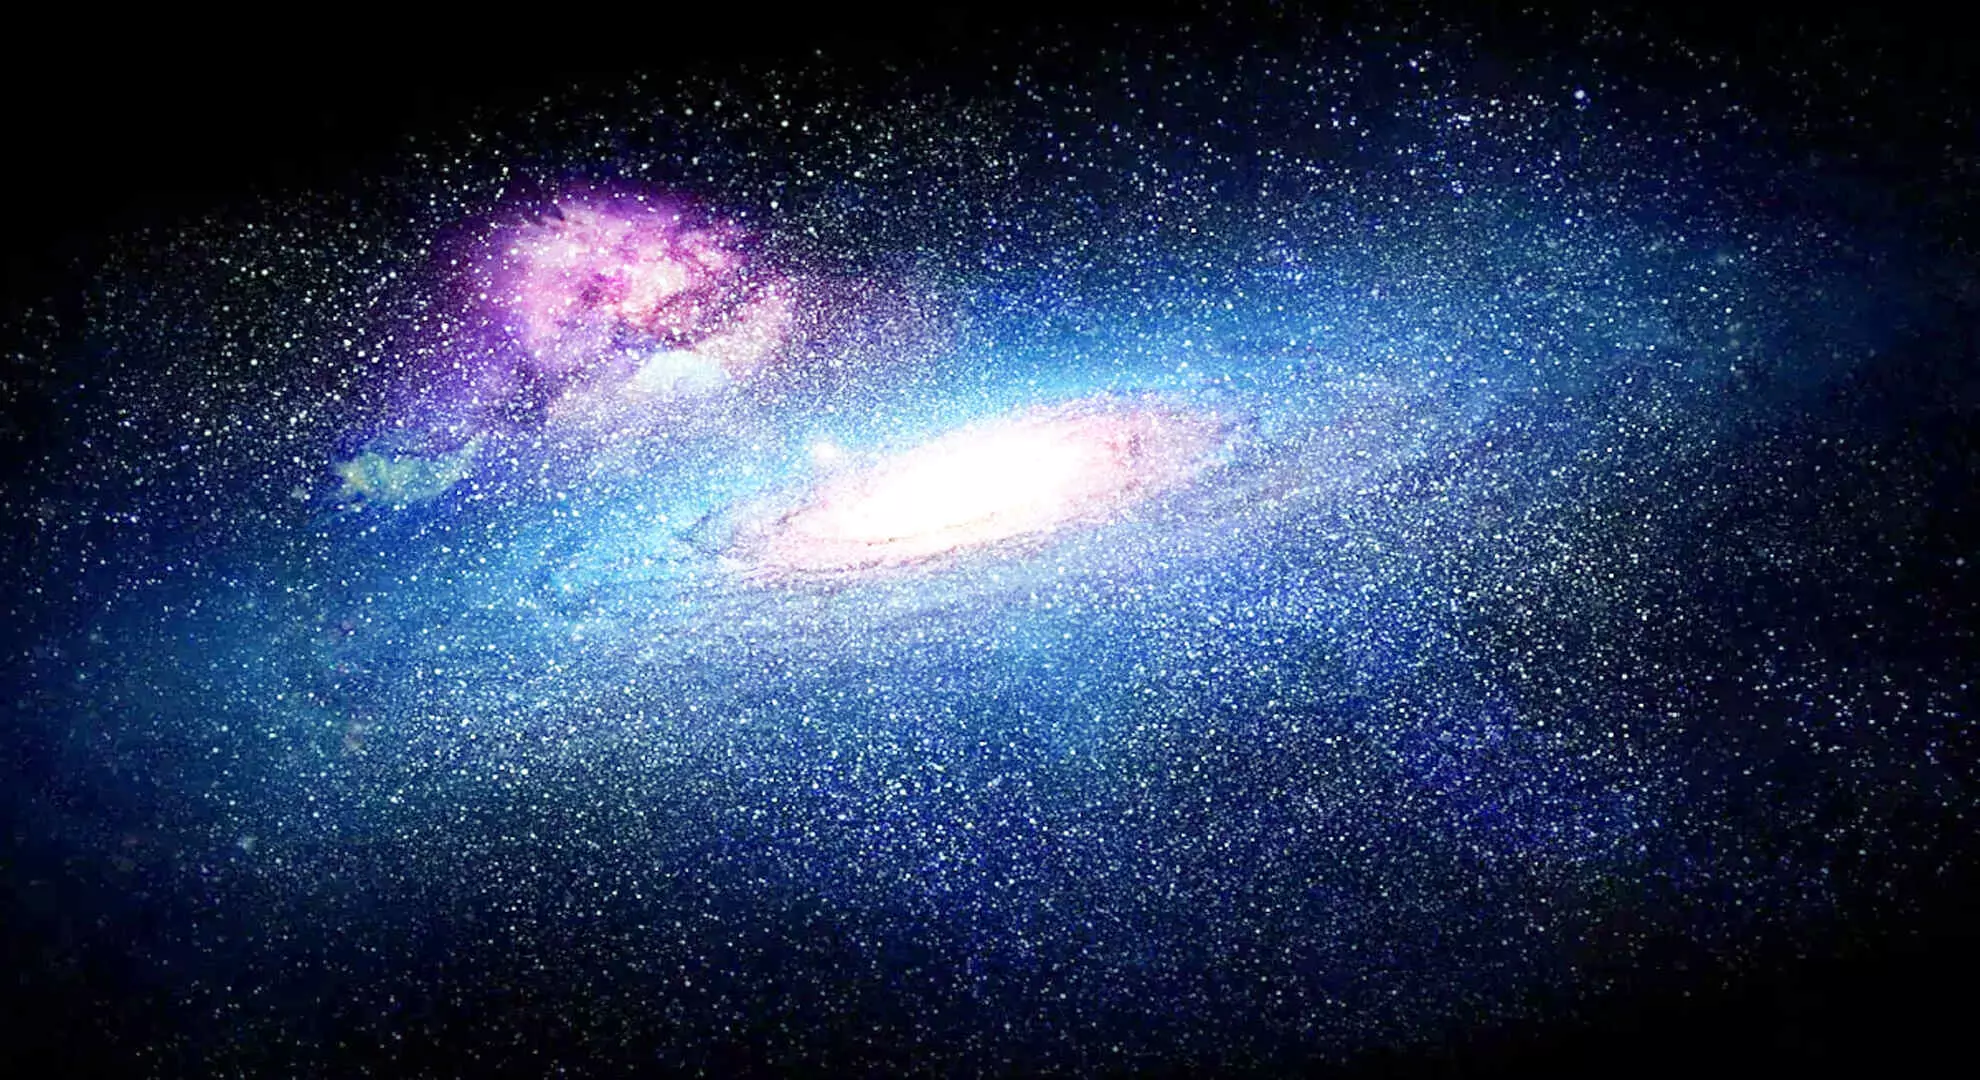 वैज्ञानिकों ने आकाशगंगा के सबसे पुराने निर्माण खंडों को शक्ति, शिव नाम दिया